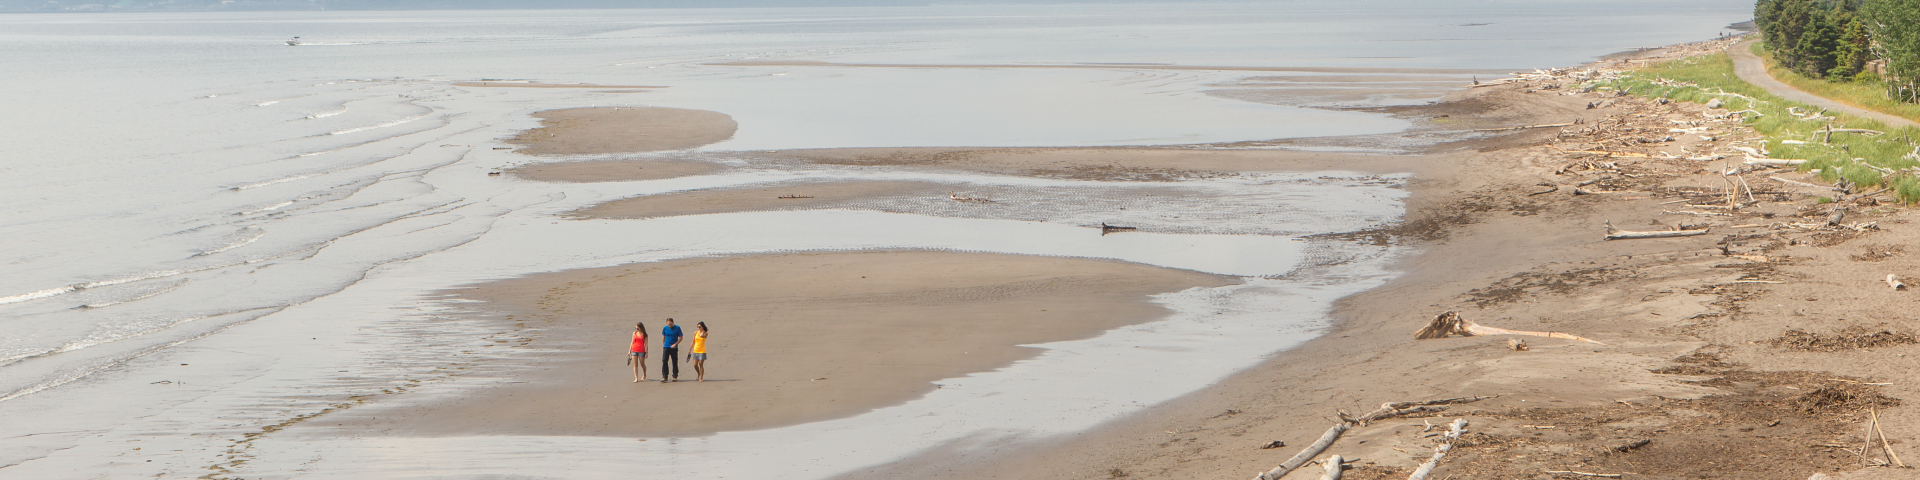 Trois personnes marchent sur un banc de sable près de la plage.